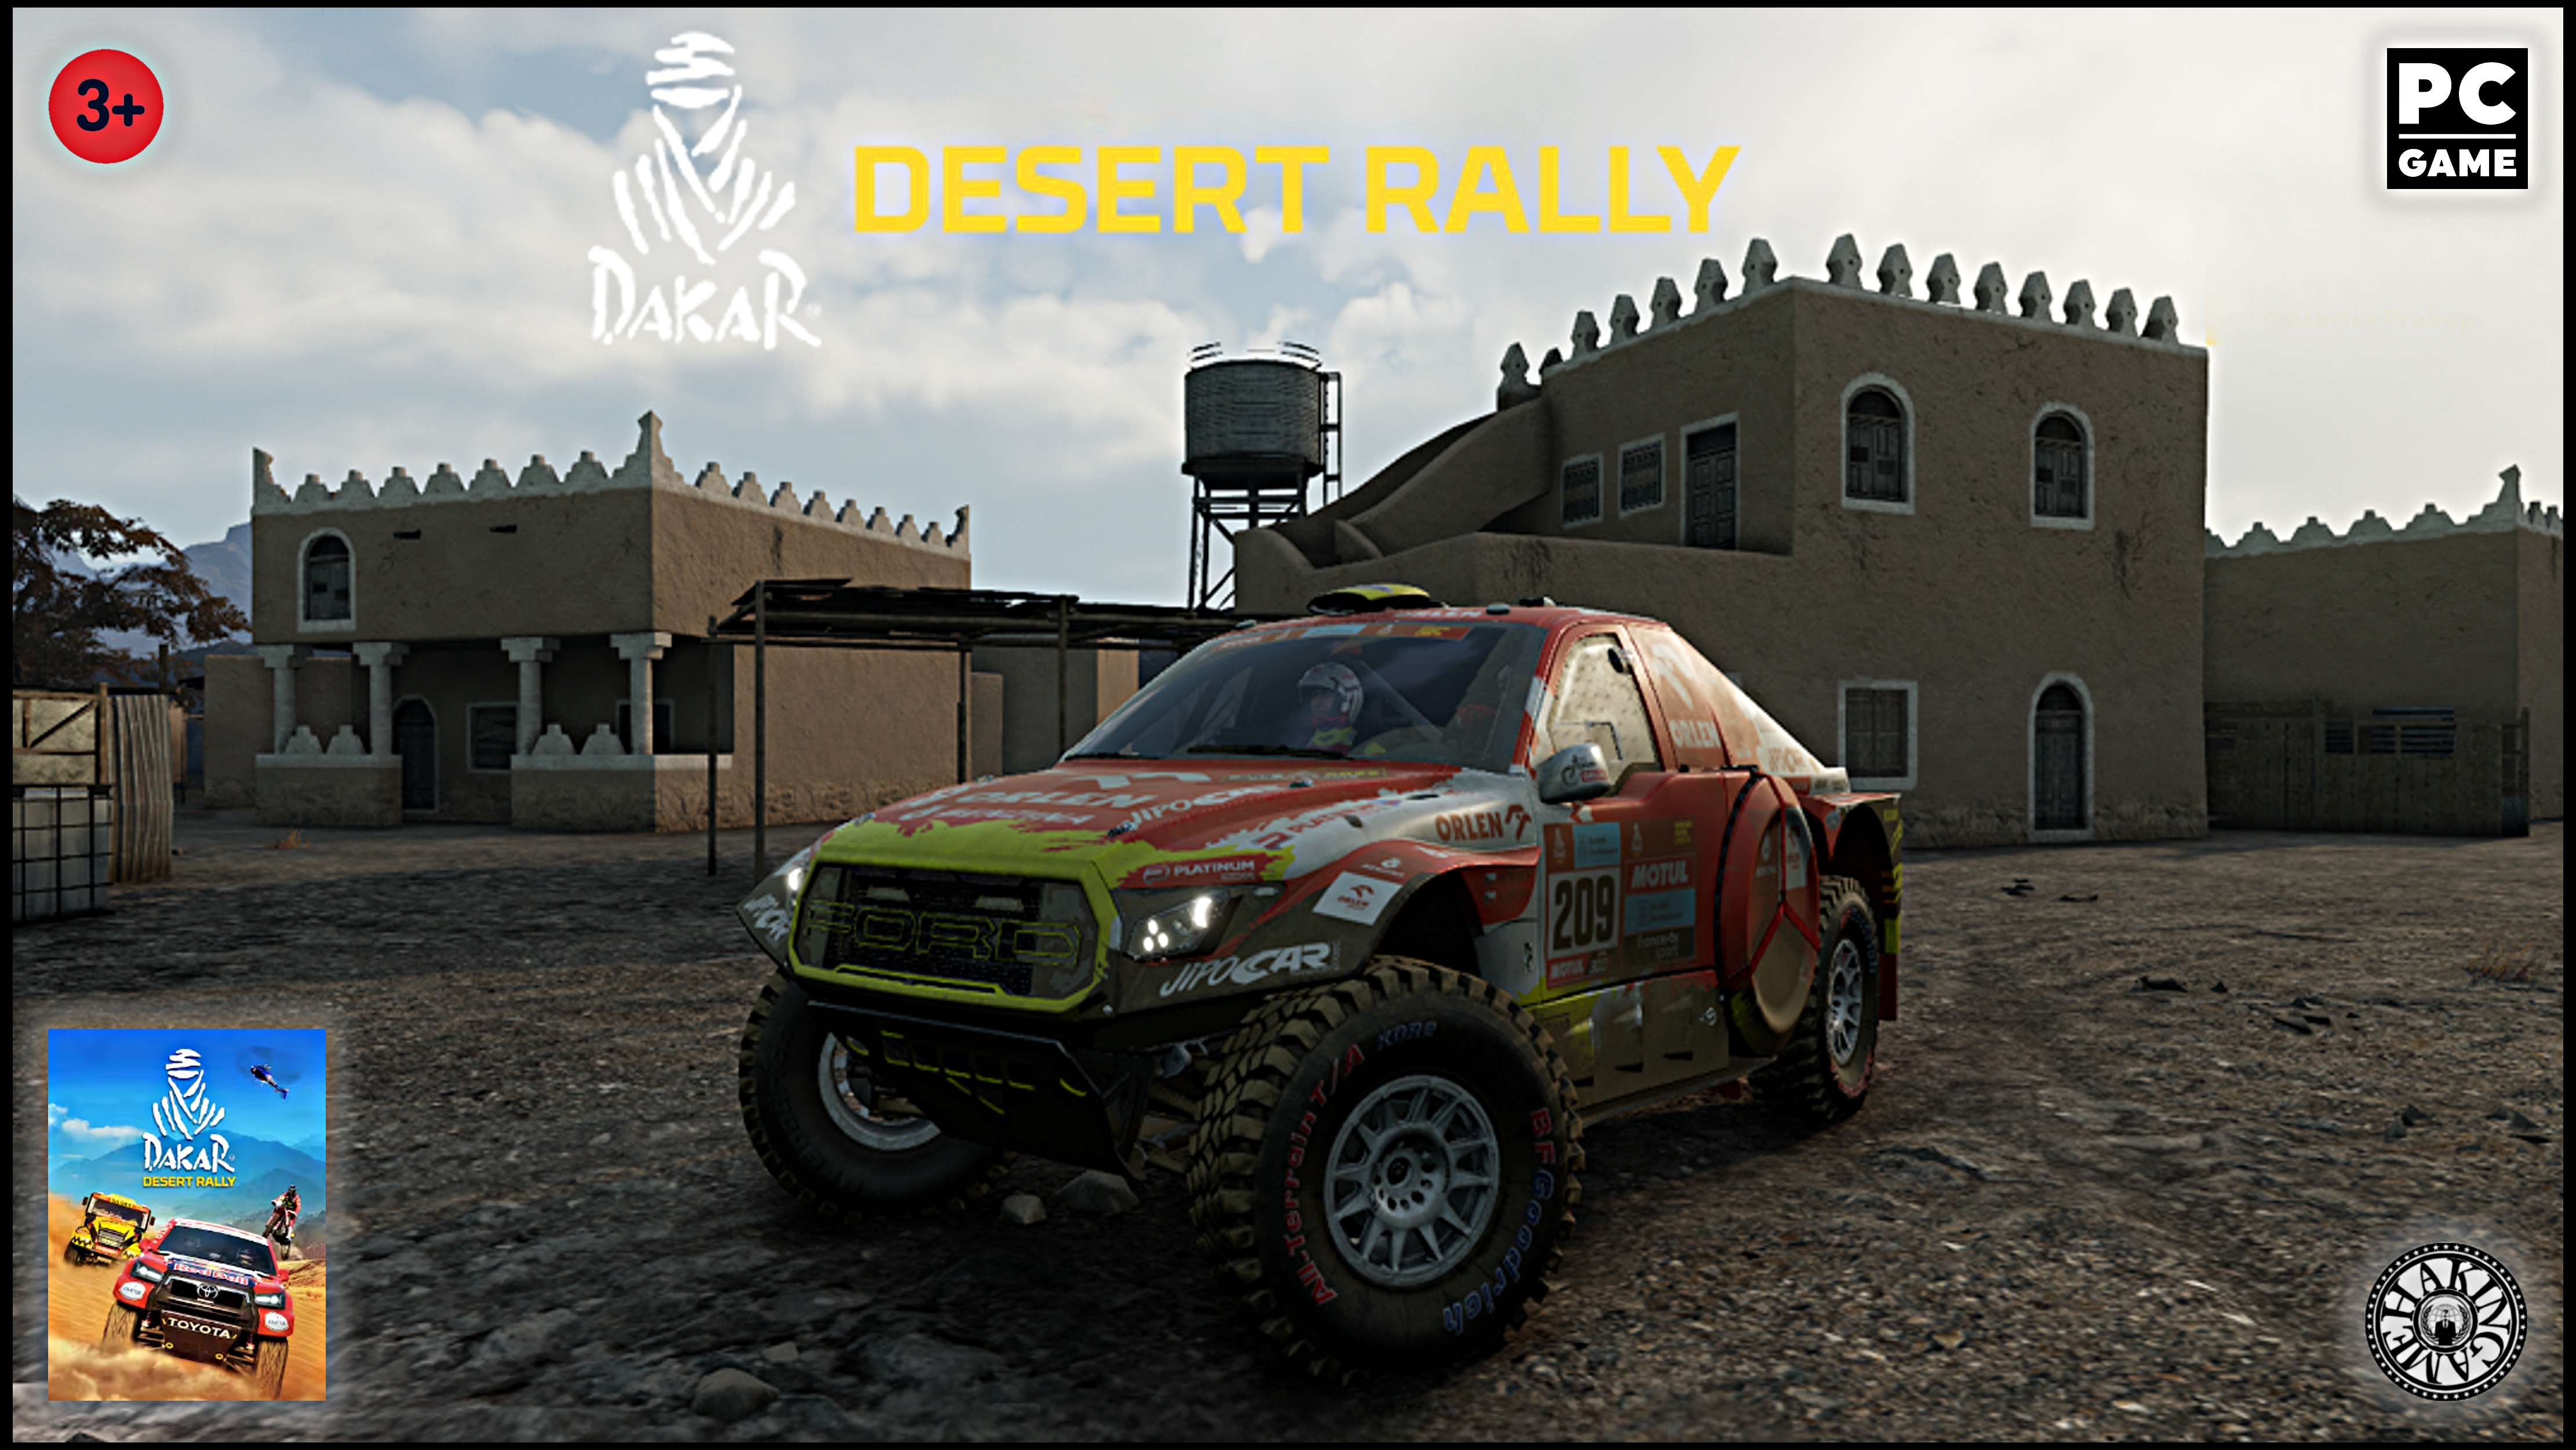 Jeddah. FORD Raptor Cross Country RS T1+. Dakar Desert Rally 2022 (PC)